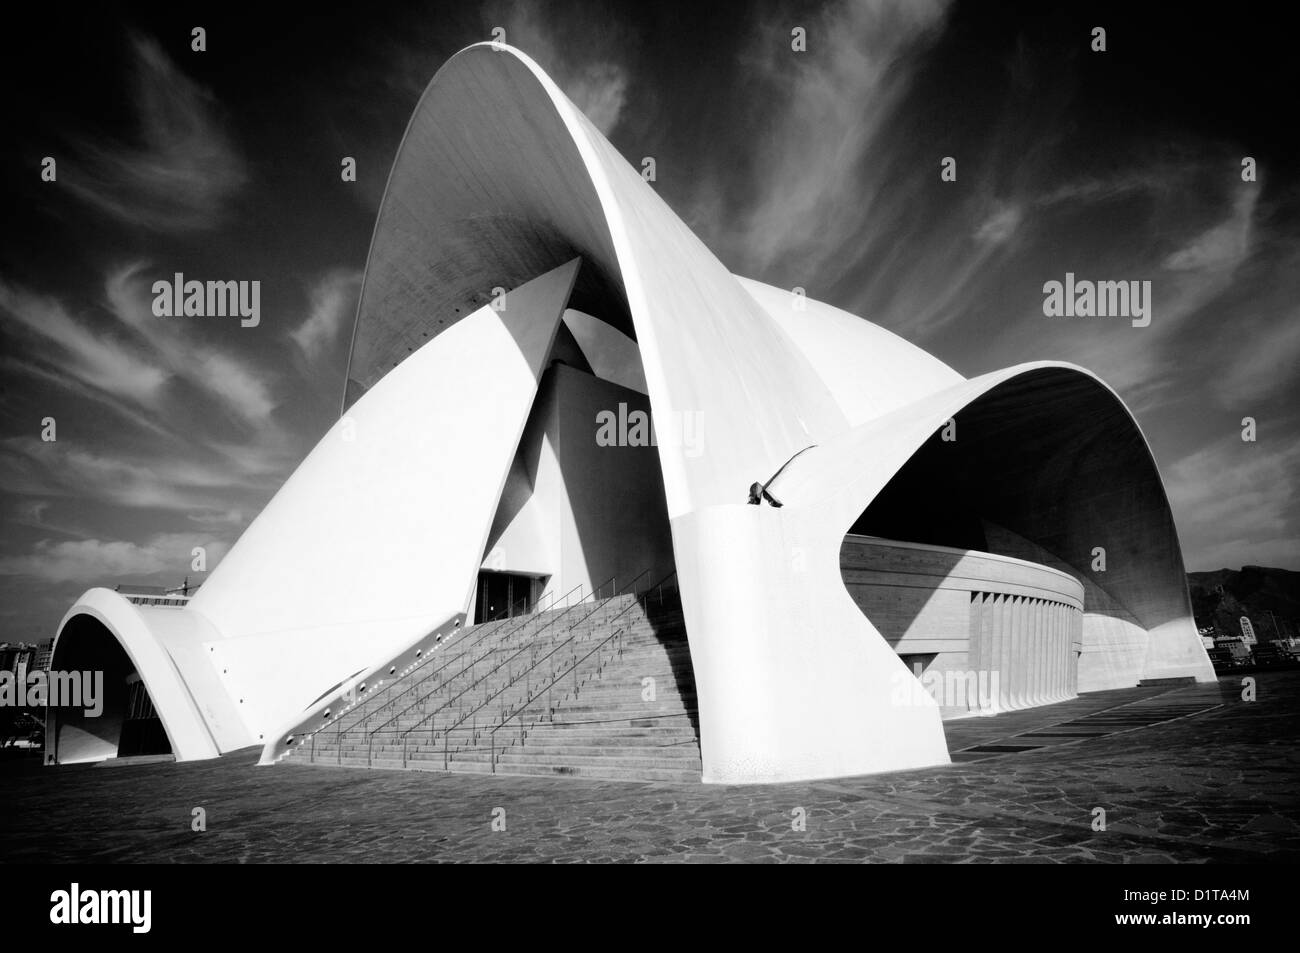 Auditorio de Tenerife Adán Martín opera drammatica architettura fotografia architettonica straordinaria dal punto di vista architettonico moderno sa Foto Stock